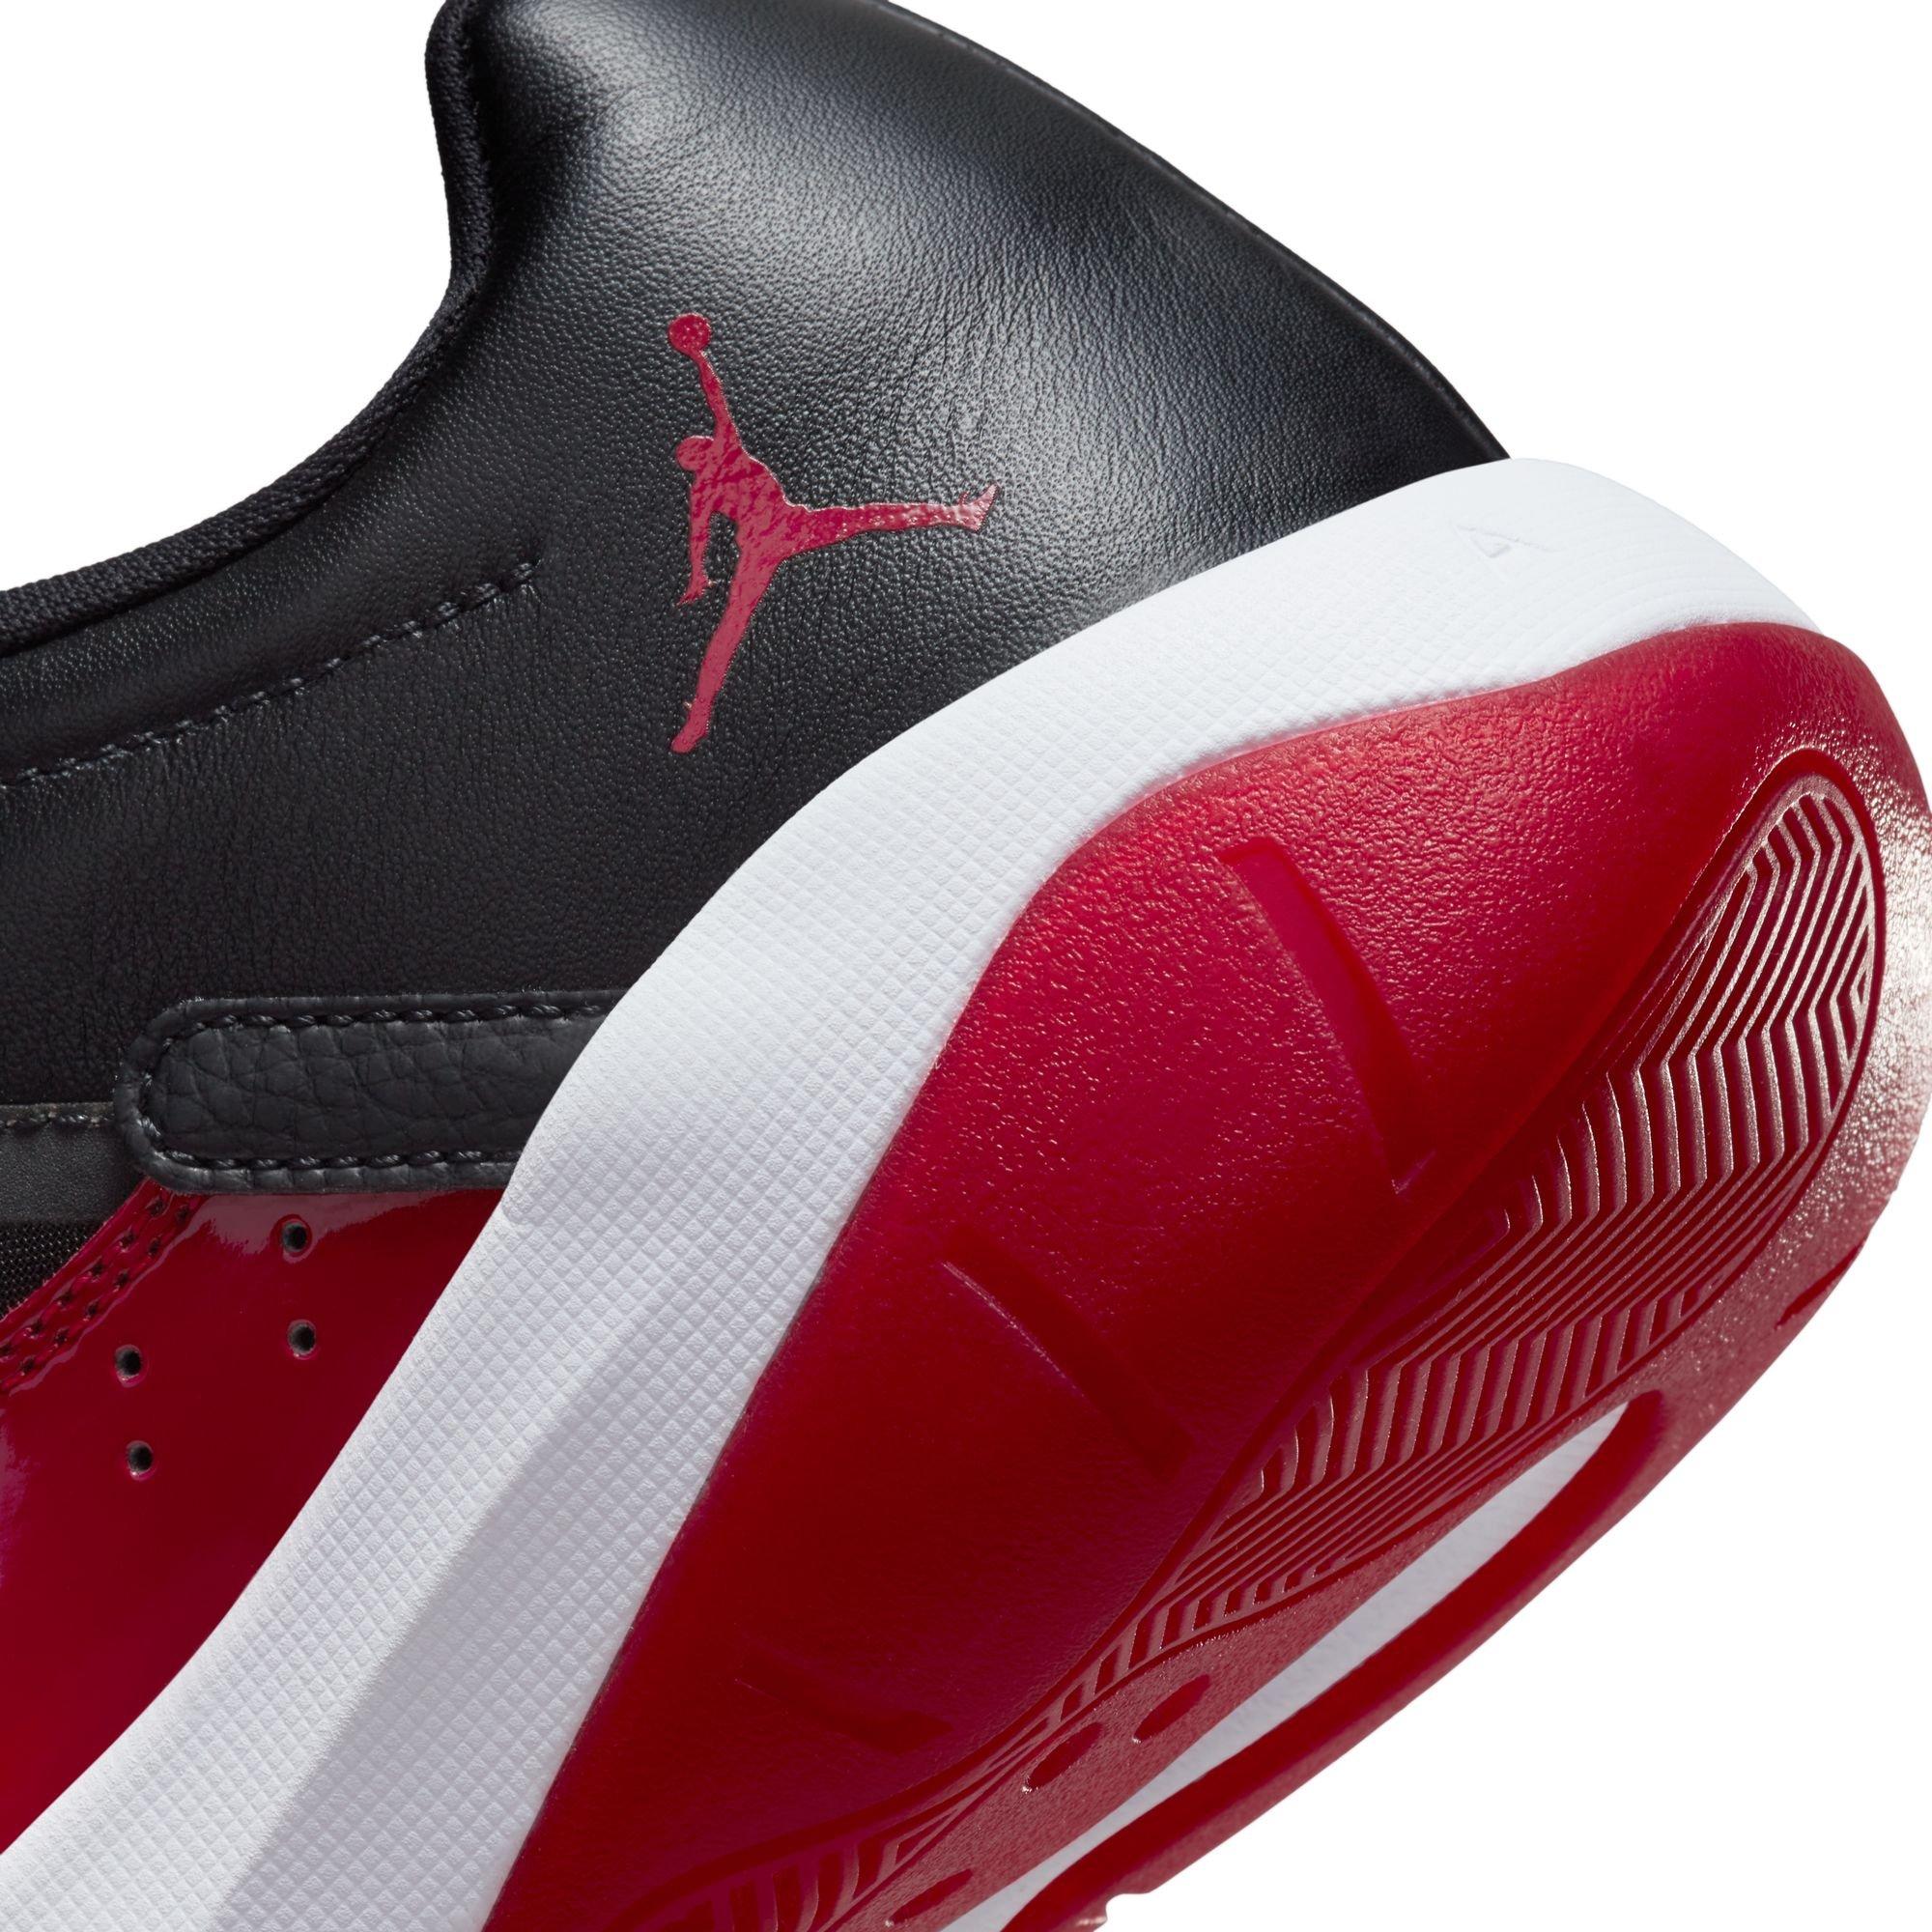 Air Jordan 11 CMFT Low Women's Shoes.